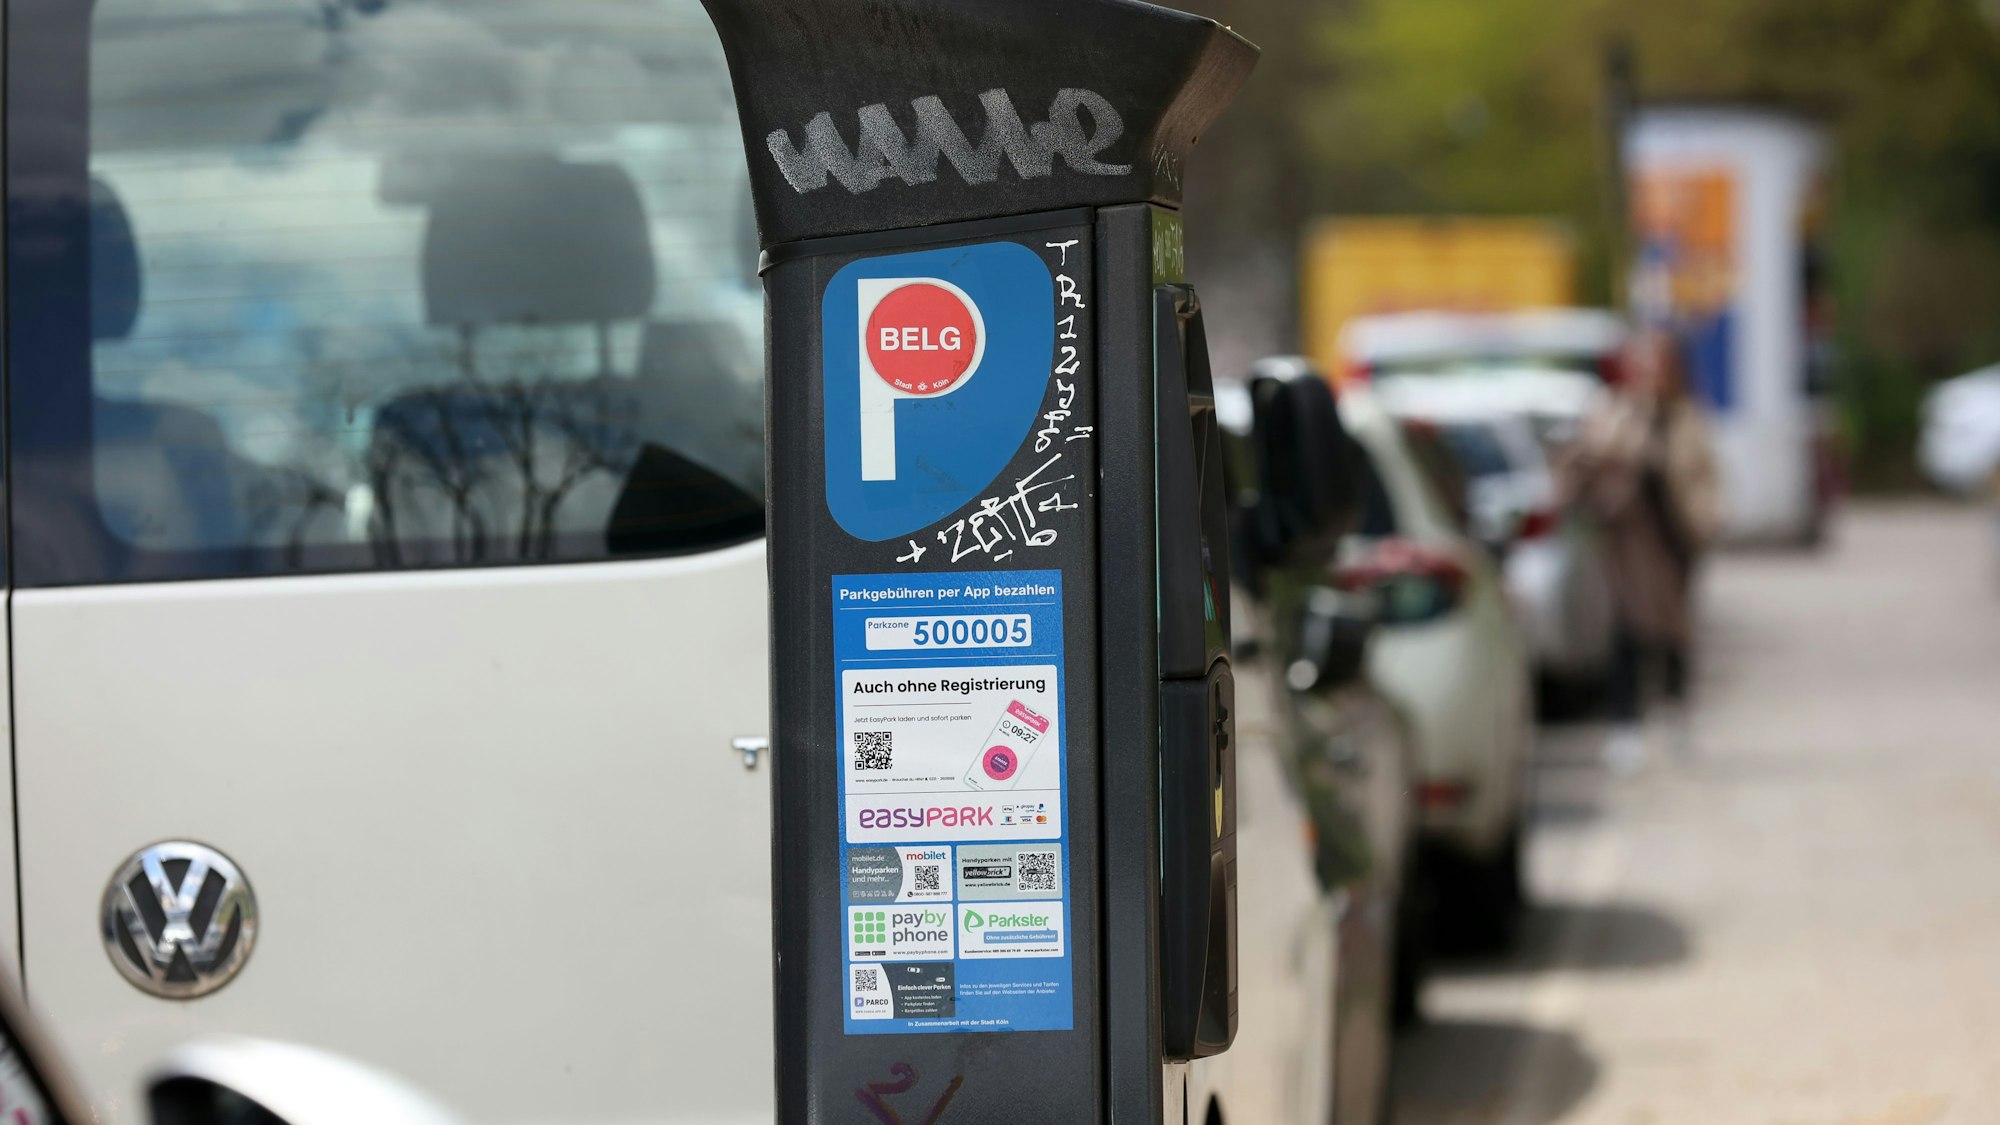 Ein Parkautomat im Belgischen Viertel – das Anwohnerparken in Köln soll wesentlich teurer werden.